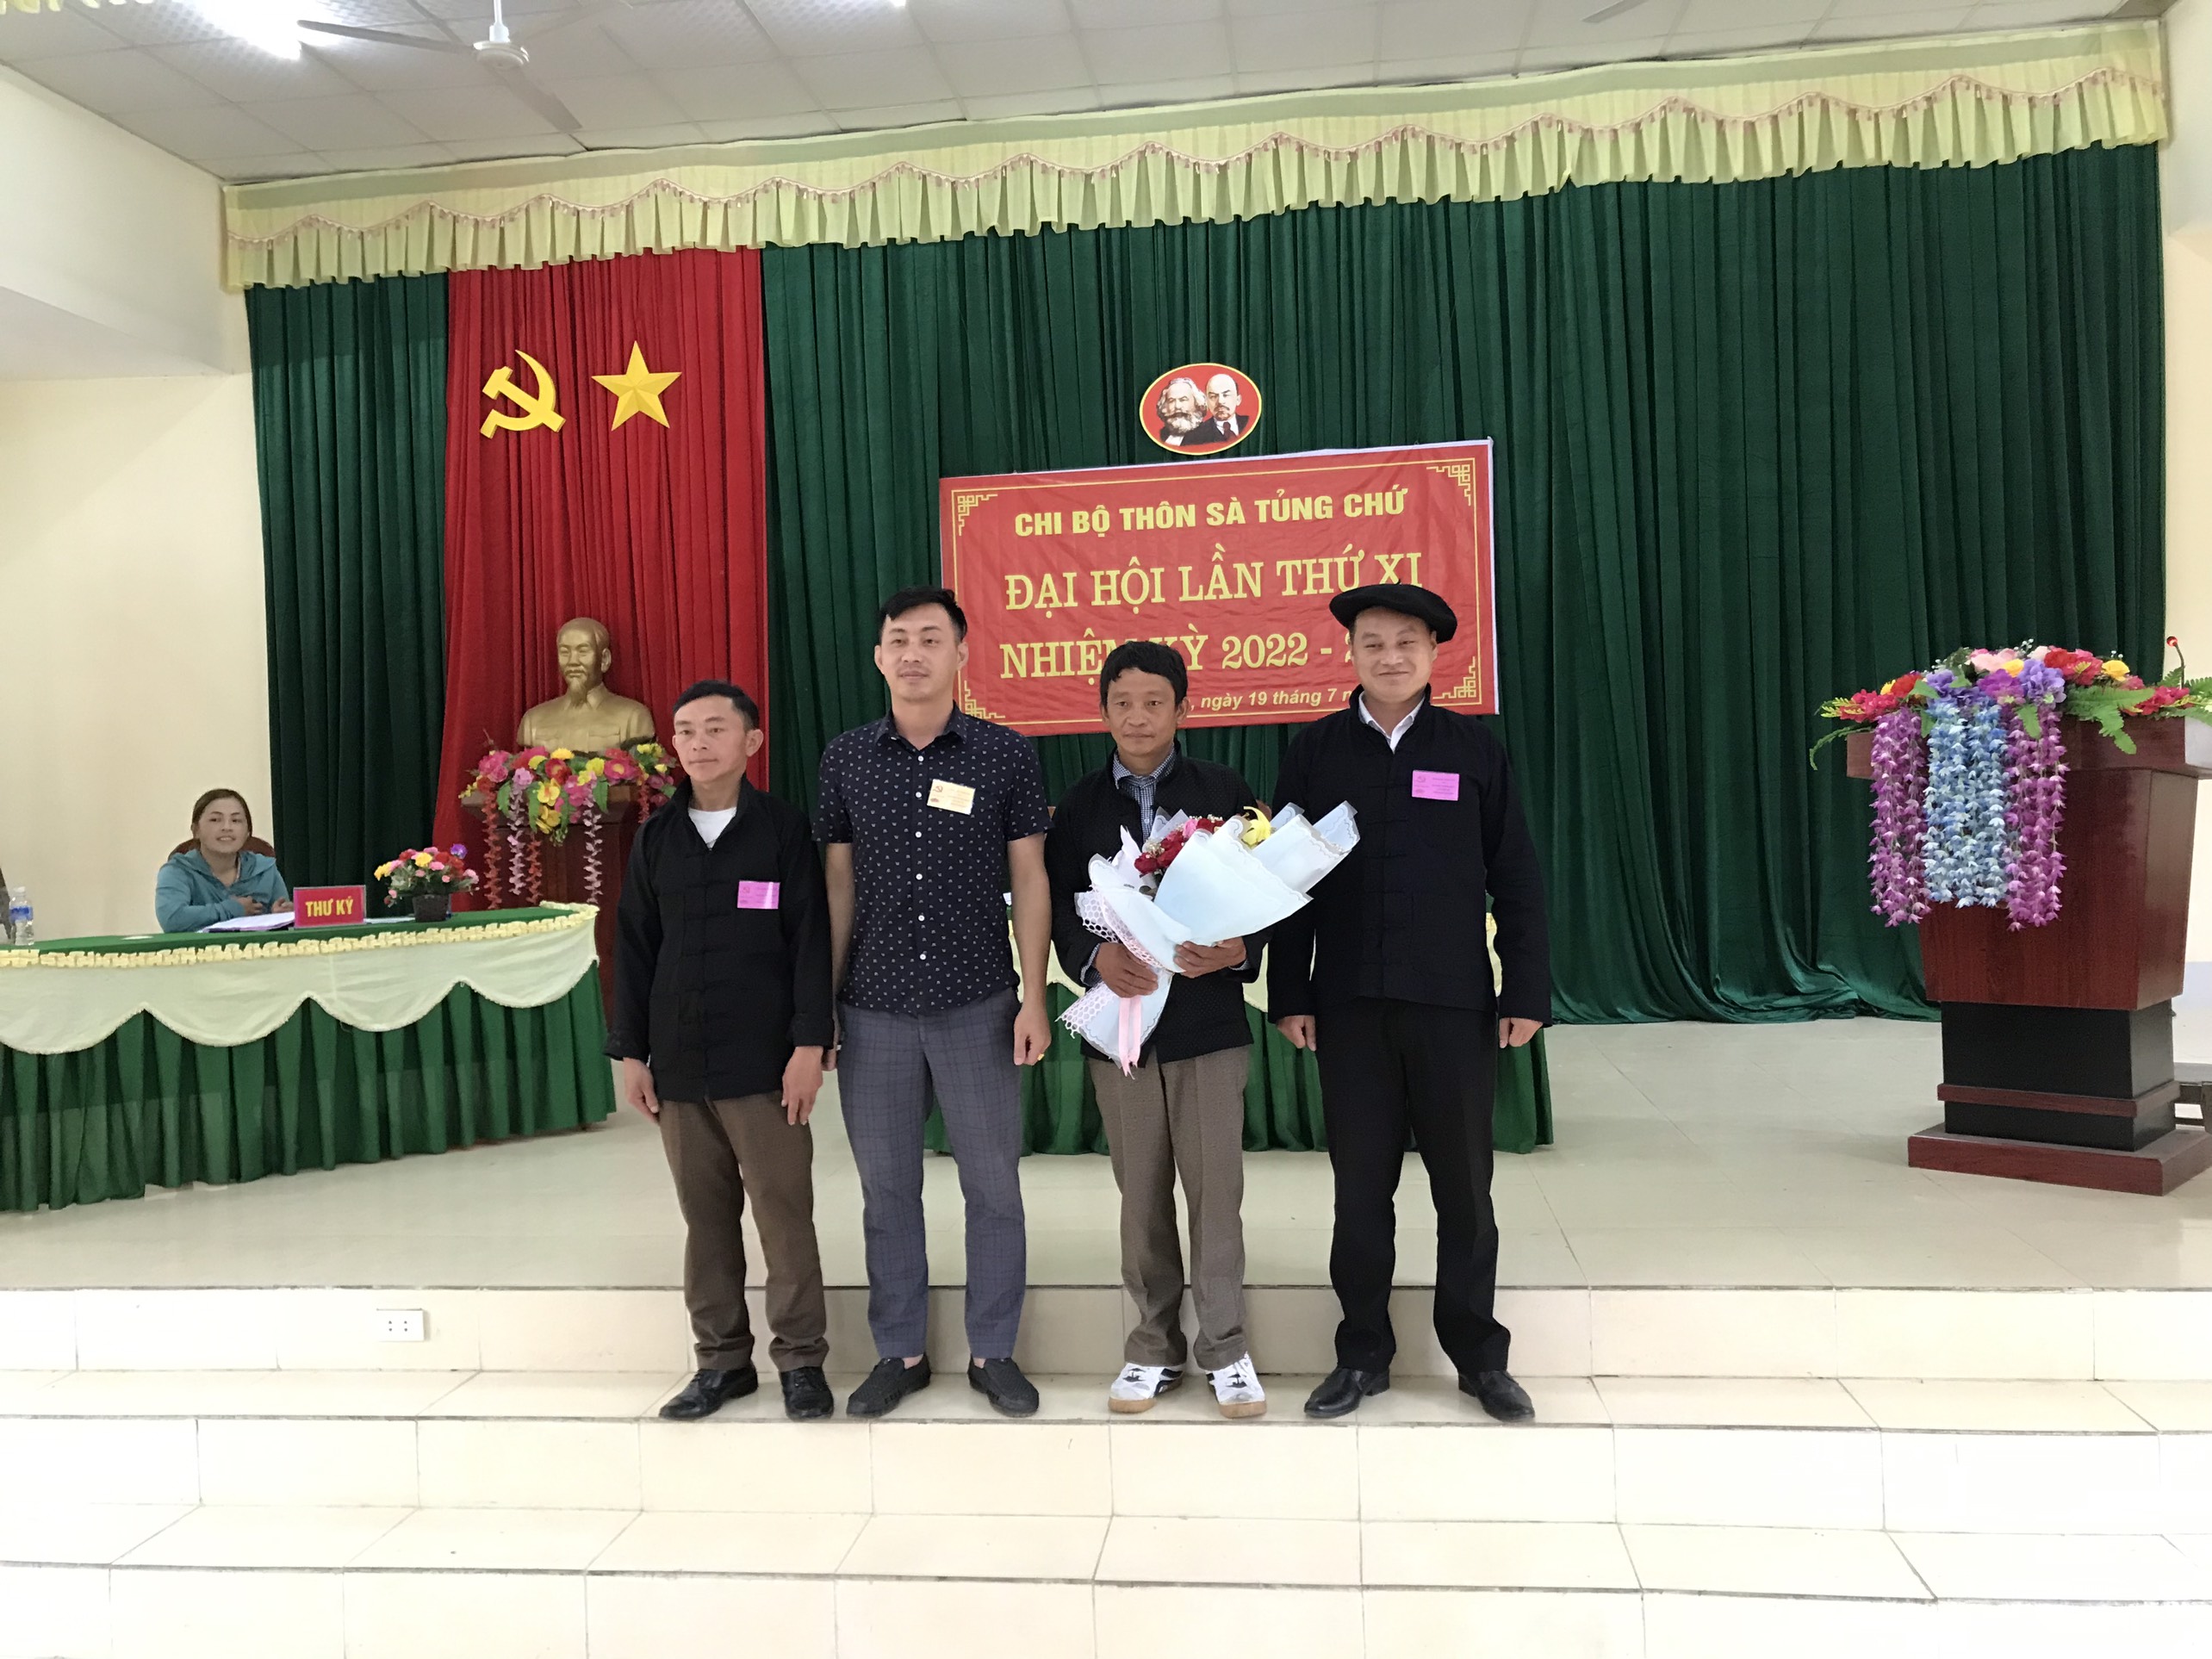 Đảng bộ xã Tả Phìn chỉ đạo hoàn thành việc tổ chức Đại hội Chi bộ nhiệm kỳ 2022-2025